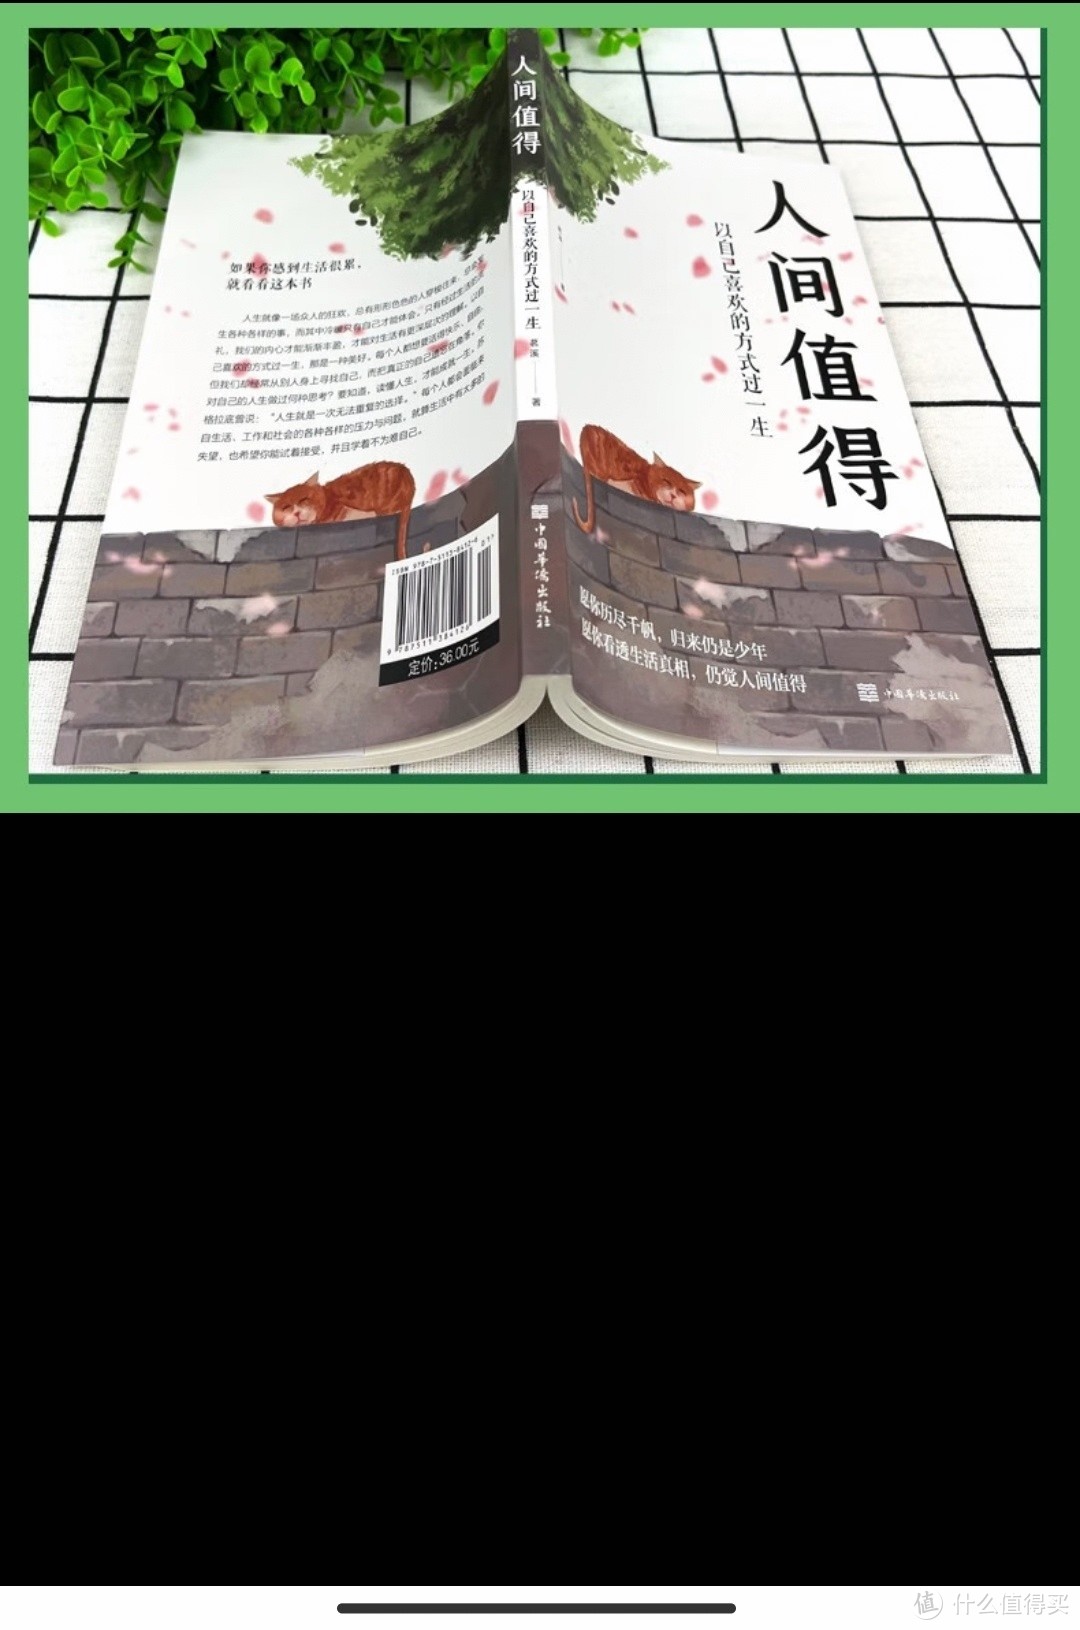 董宇辉推荐过这本书，如果你觉得生活很累，可以看下这本《人间值得》。愿你历尽千帆，归来仍是少年！